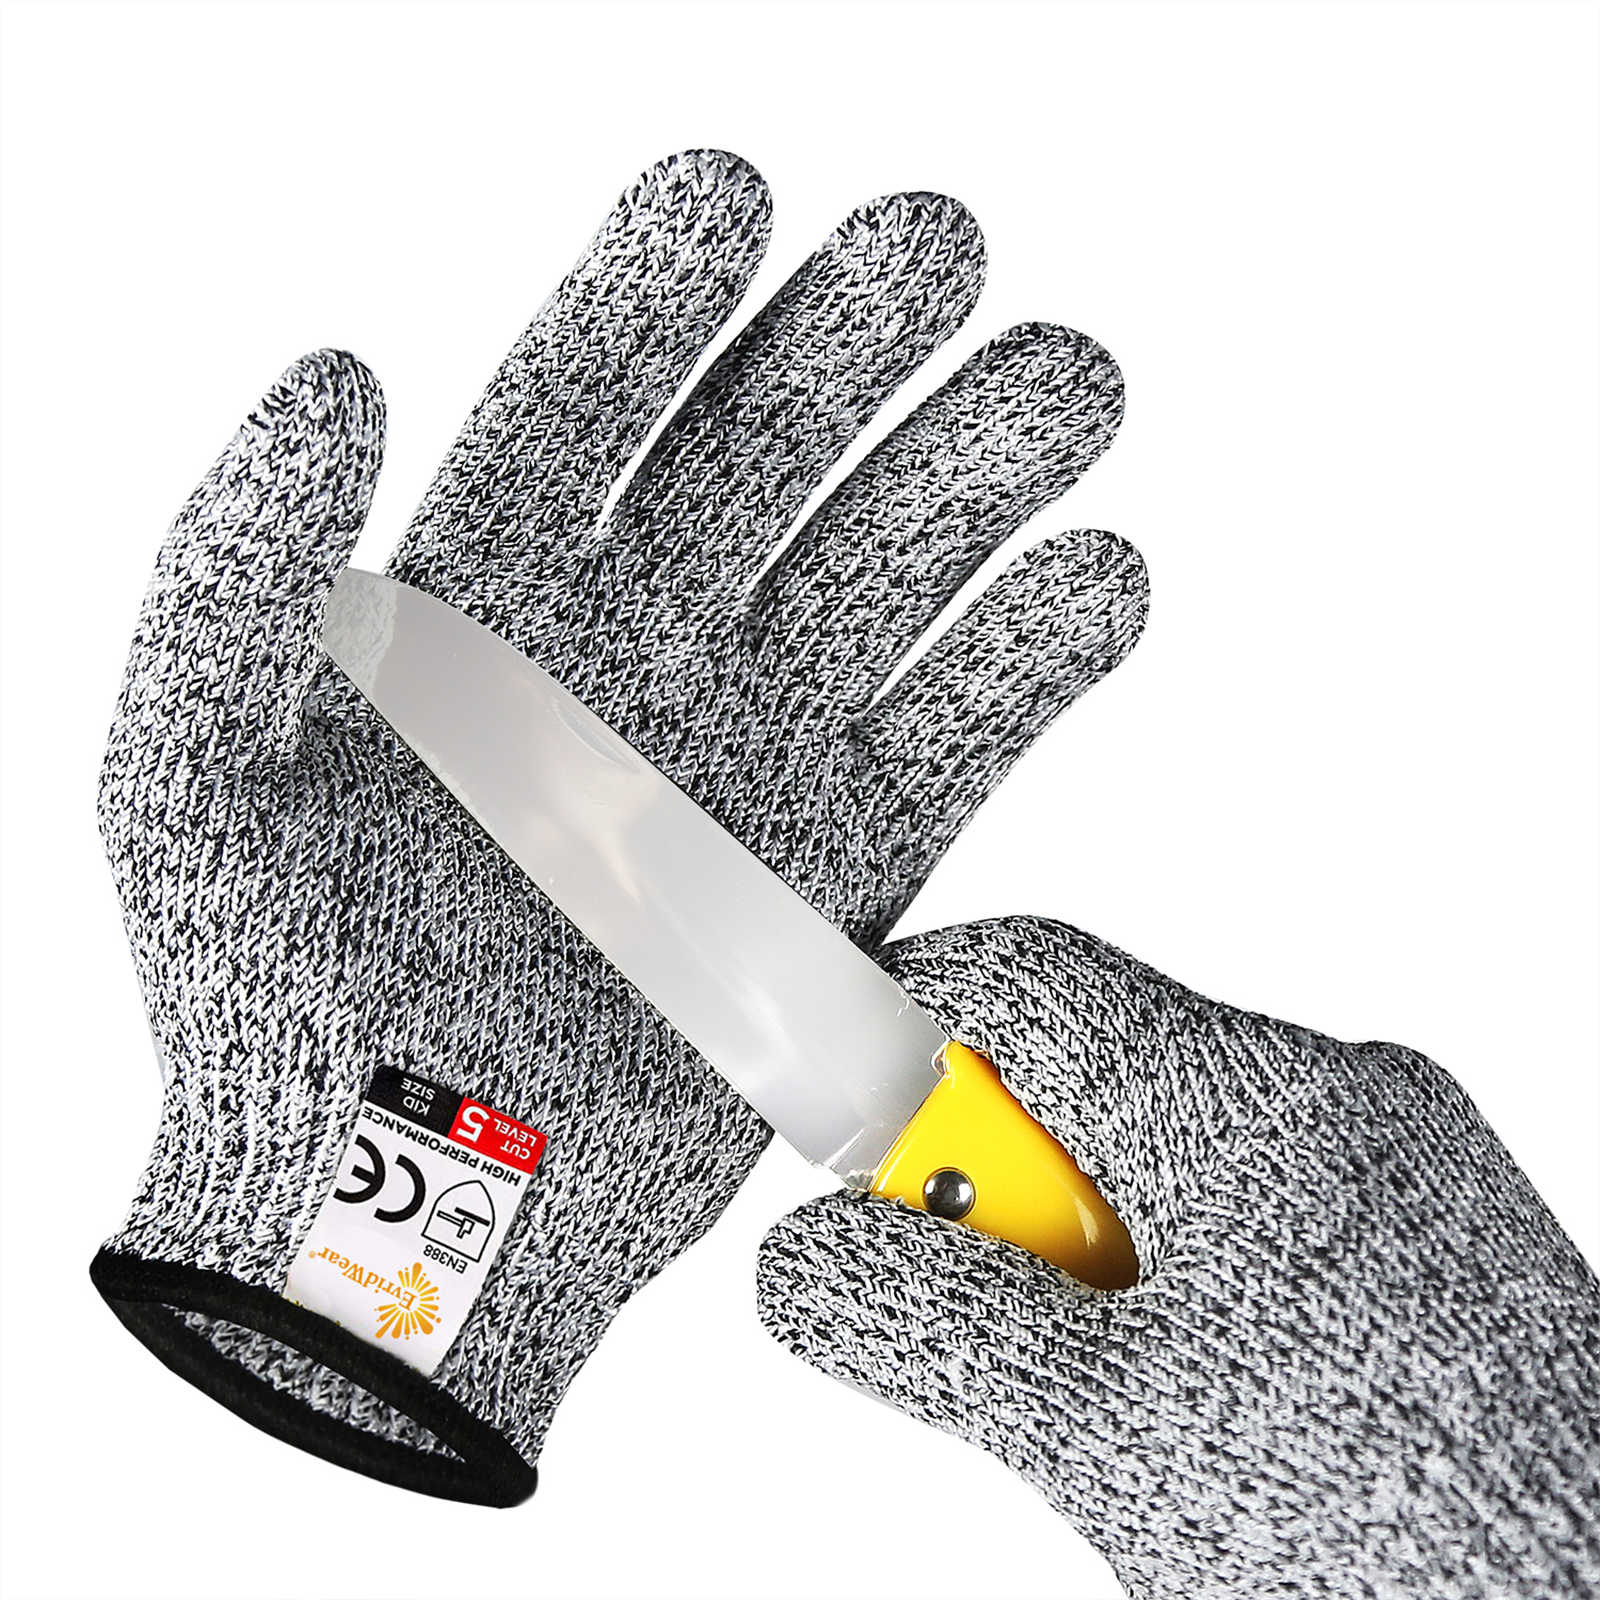 TruChef KIDS Cut Resistant Gloves (Ages 4-8) - Maximum Kids